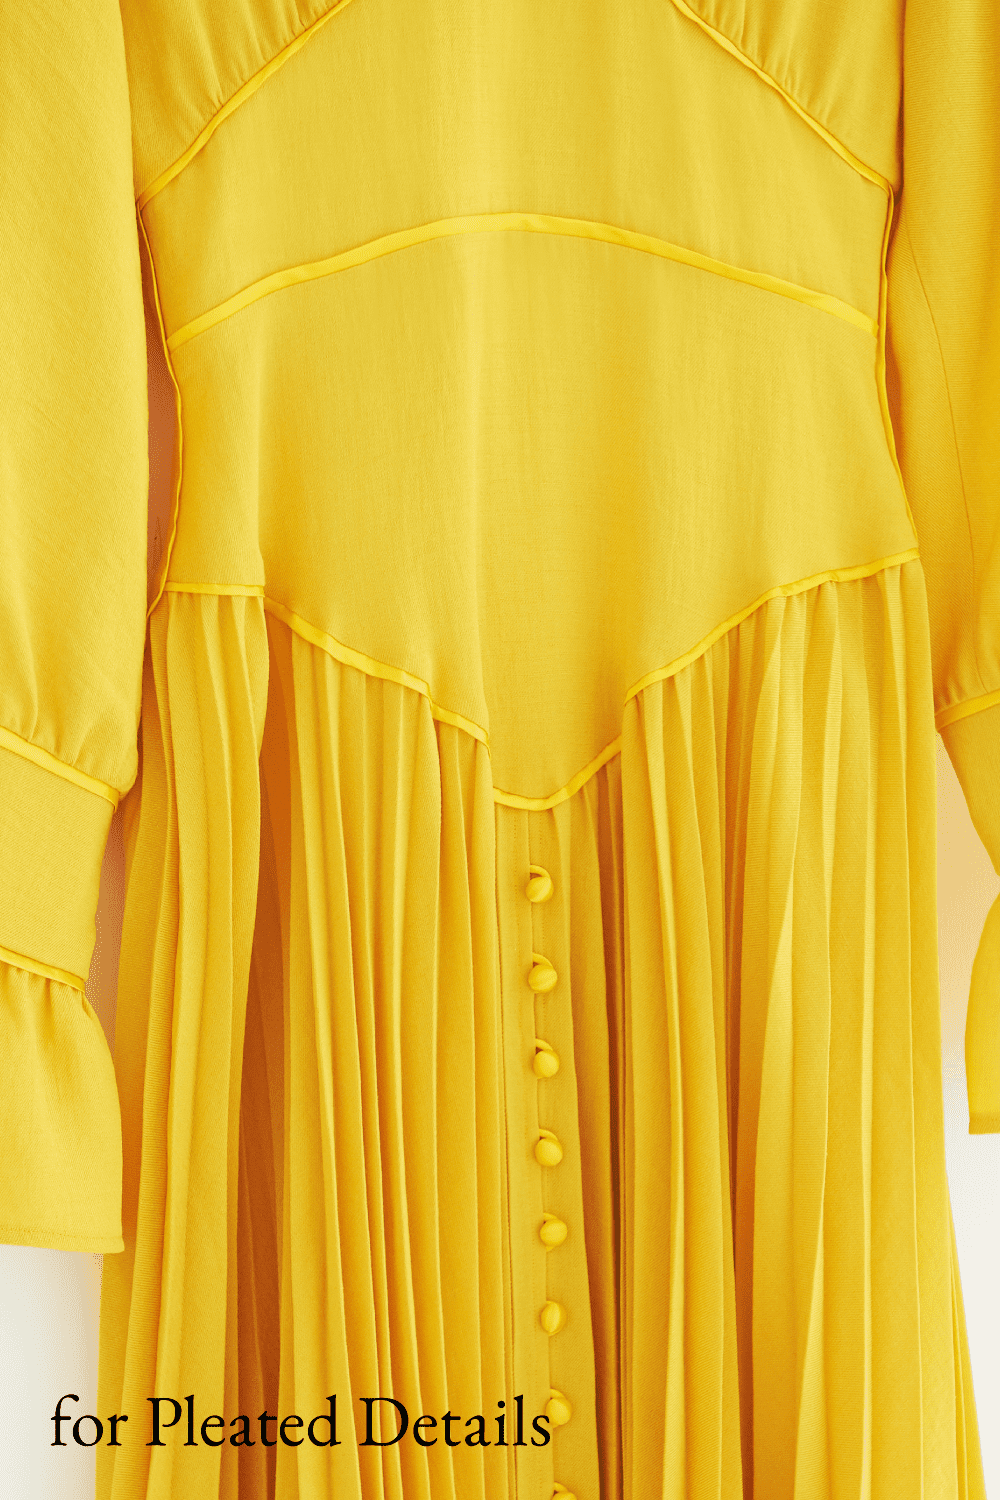 スカート部分にプリーツを効かせた黄色のドレス